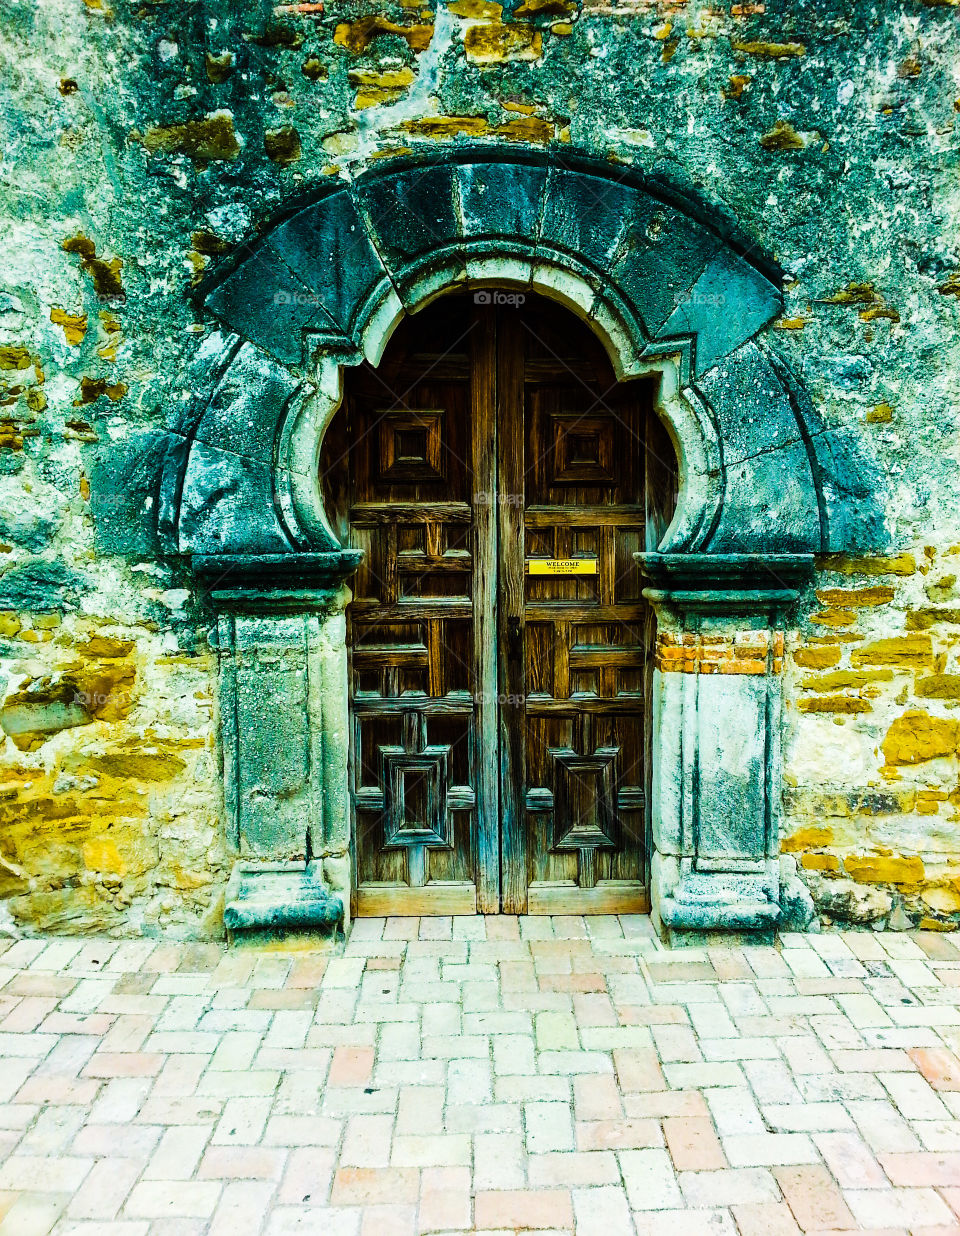 Ornate Door